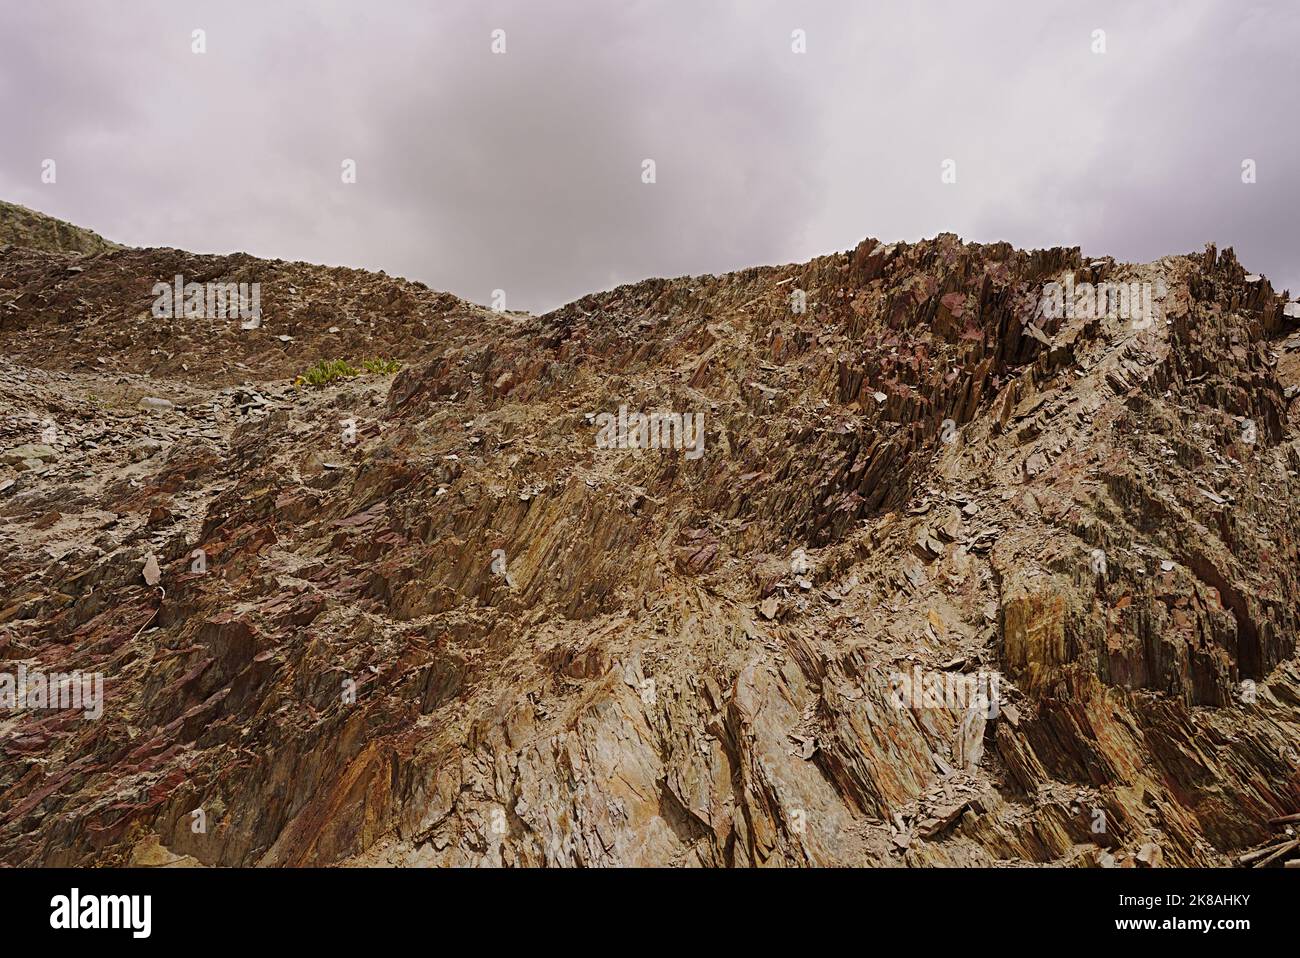 Strutture geologiche sedimentarie paesaggi insoliti formazioni naturali in alta quota deserti freddi Foto Stock